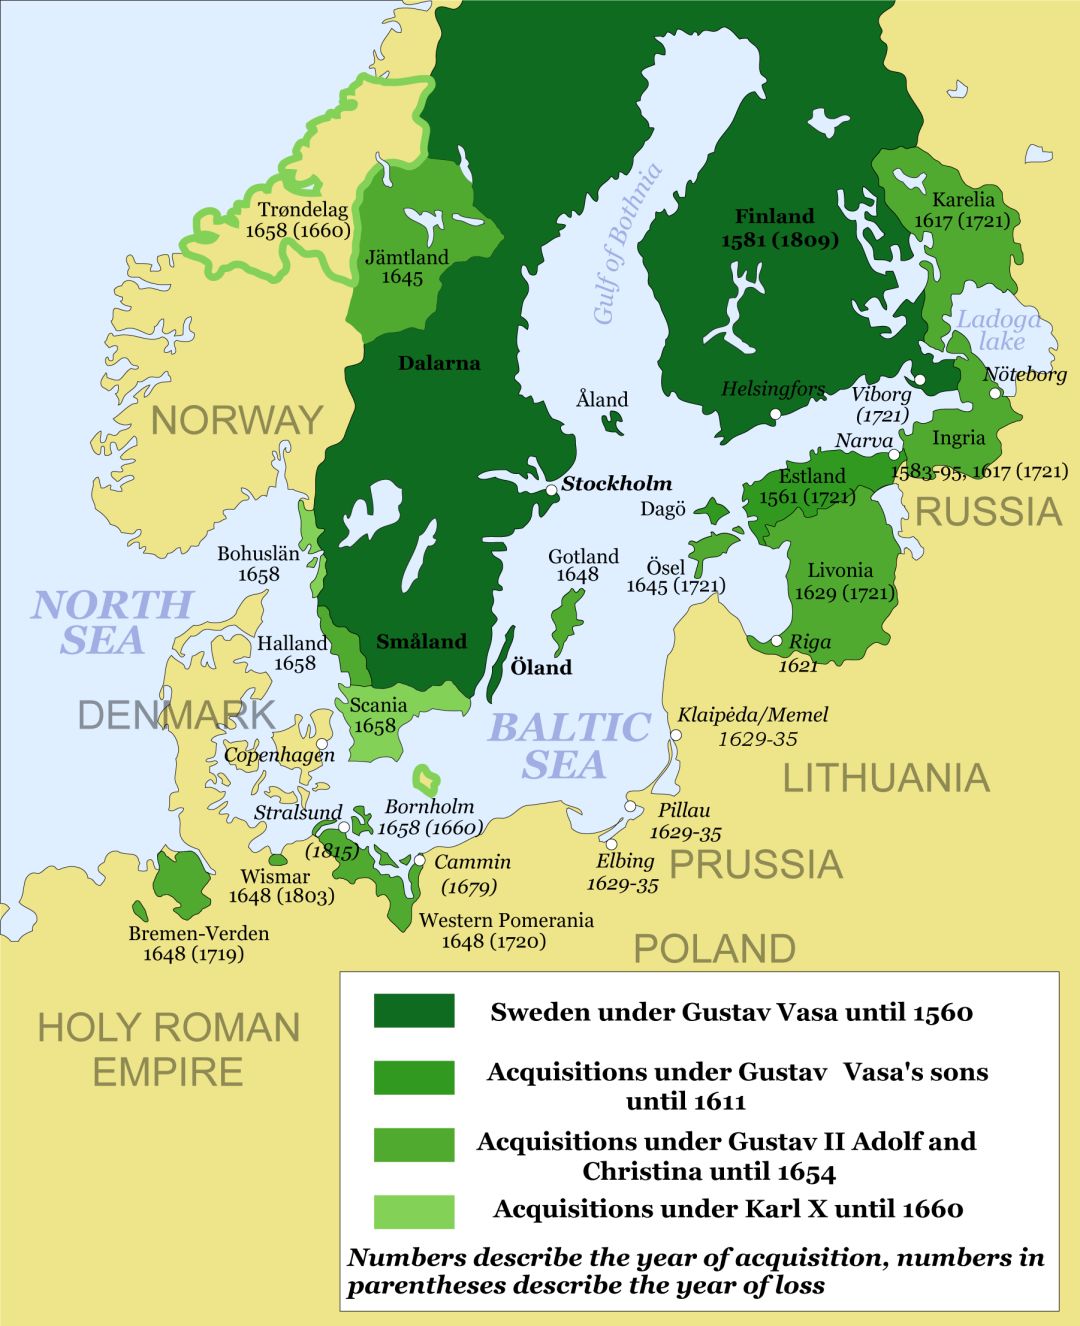 芬兰都是瑞典王国的一部分,直到沙俄攻入,才成为了沙俄的大公国